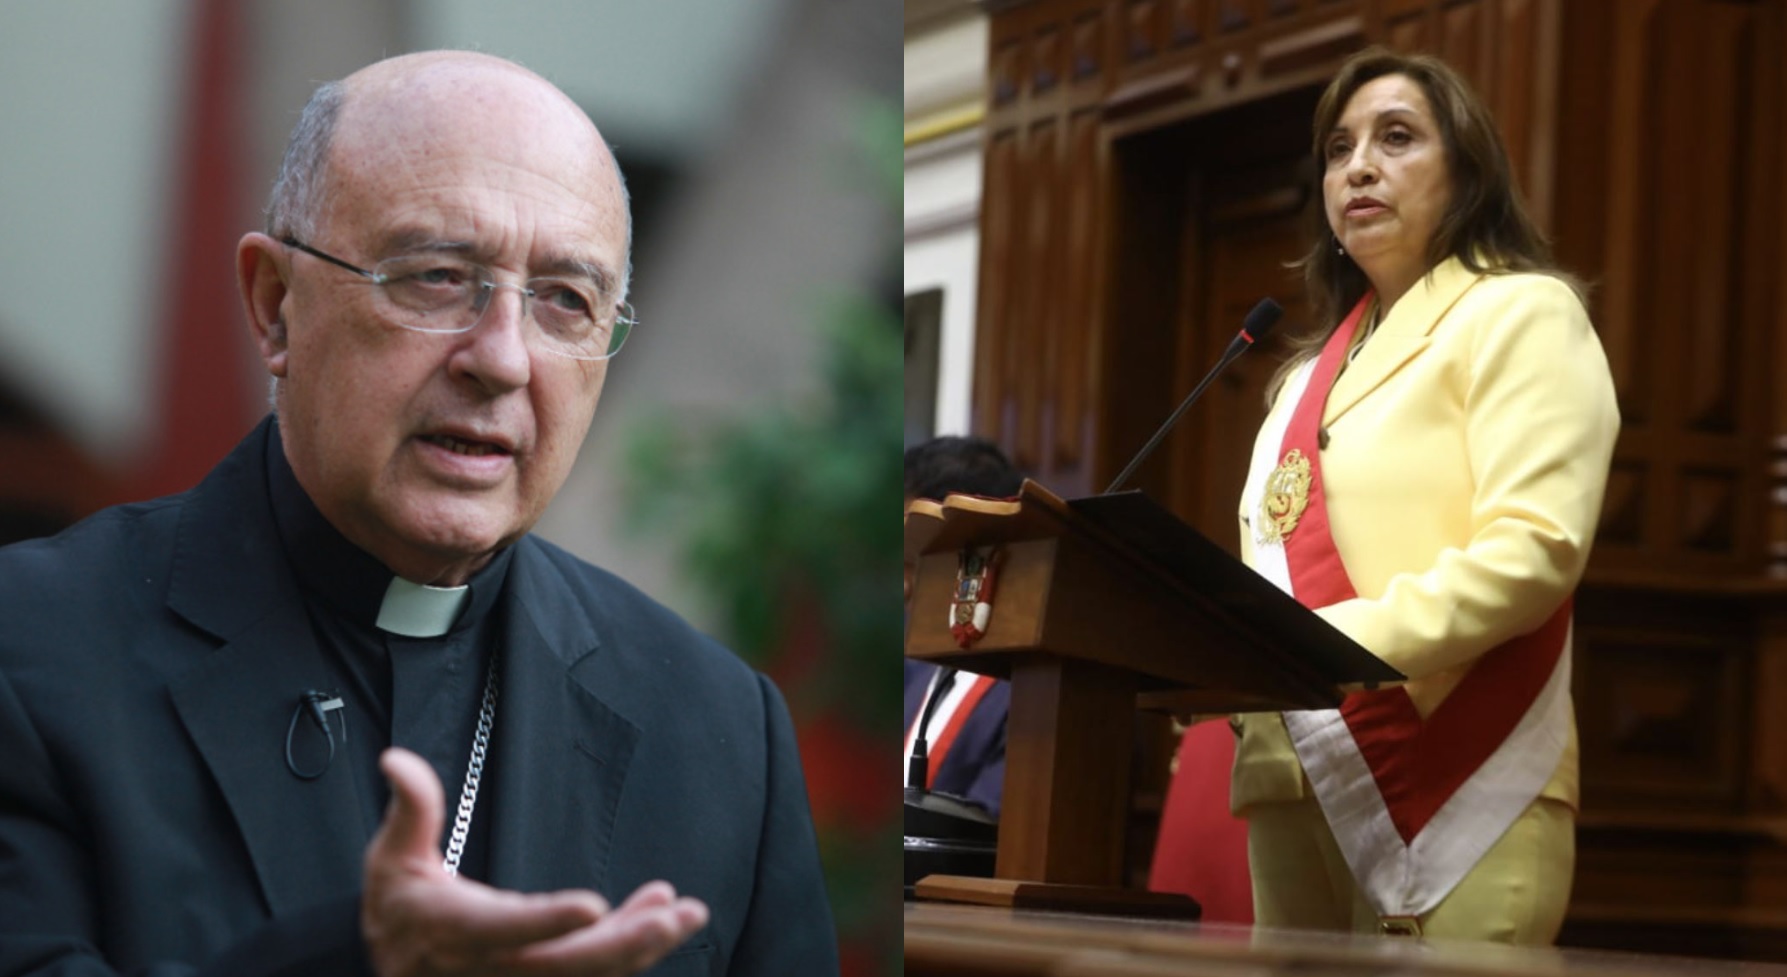  Cardenal Barreto: Las muertes deben ser investigadas